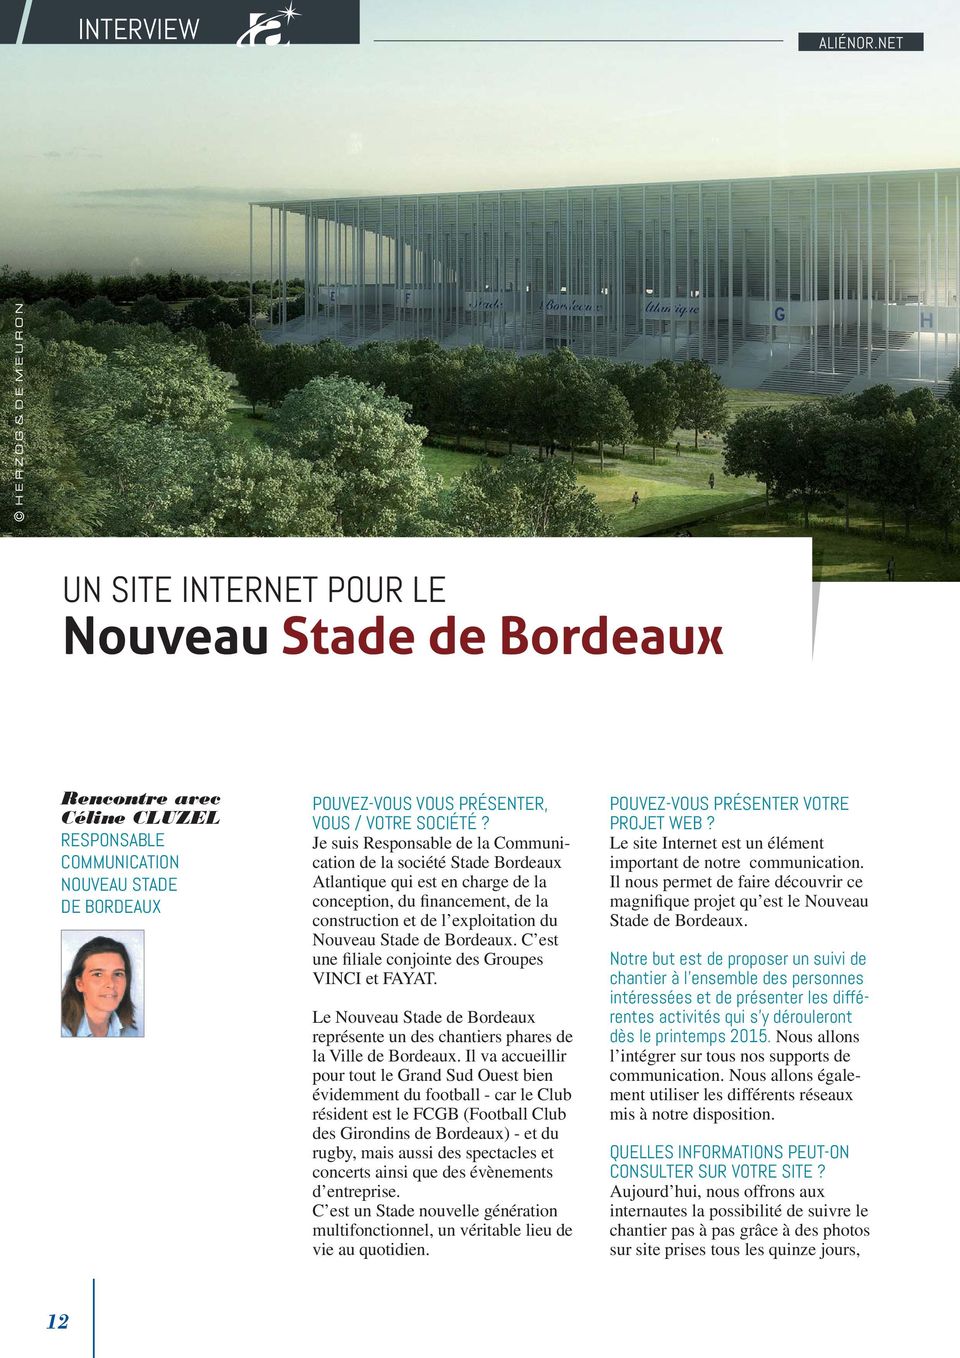 Je suis Responsable de la Communication de la société Stade Bordeaux Atlantique qui est en charge de la conception, du financement, de la construction et de l exploitation du Nouveau Stade de